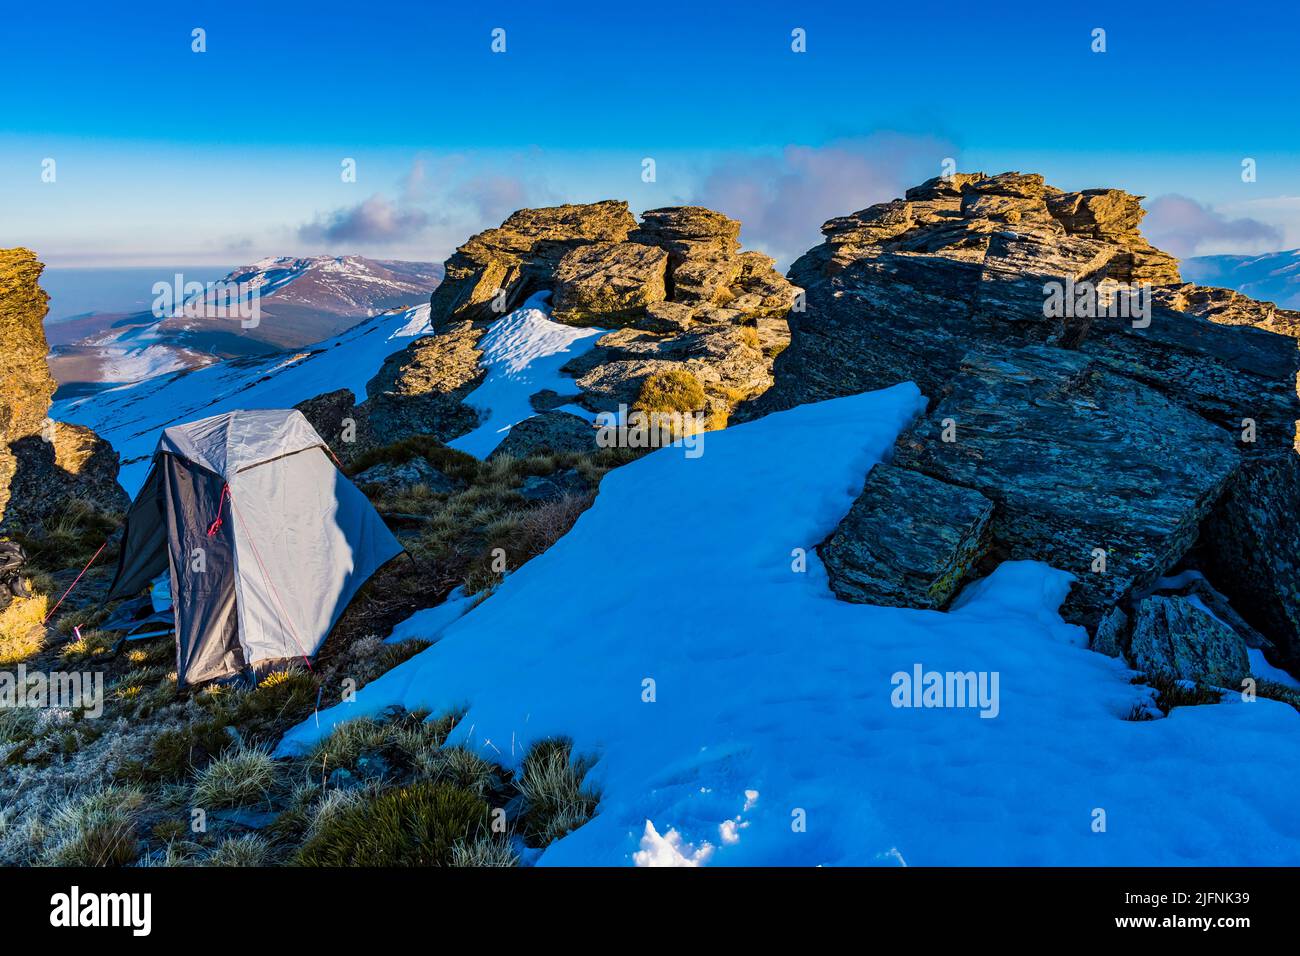 Zelten Sie in einem einsamen Biwak auf dem Gipfel des Berges. El Chullo, mit einer Höhe von 2.612 Metern über dem Meeresspiegel, ist der höchste Gipfel in der Provinz Stockfoto